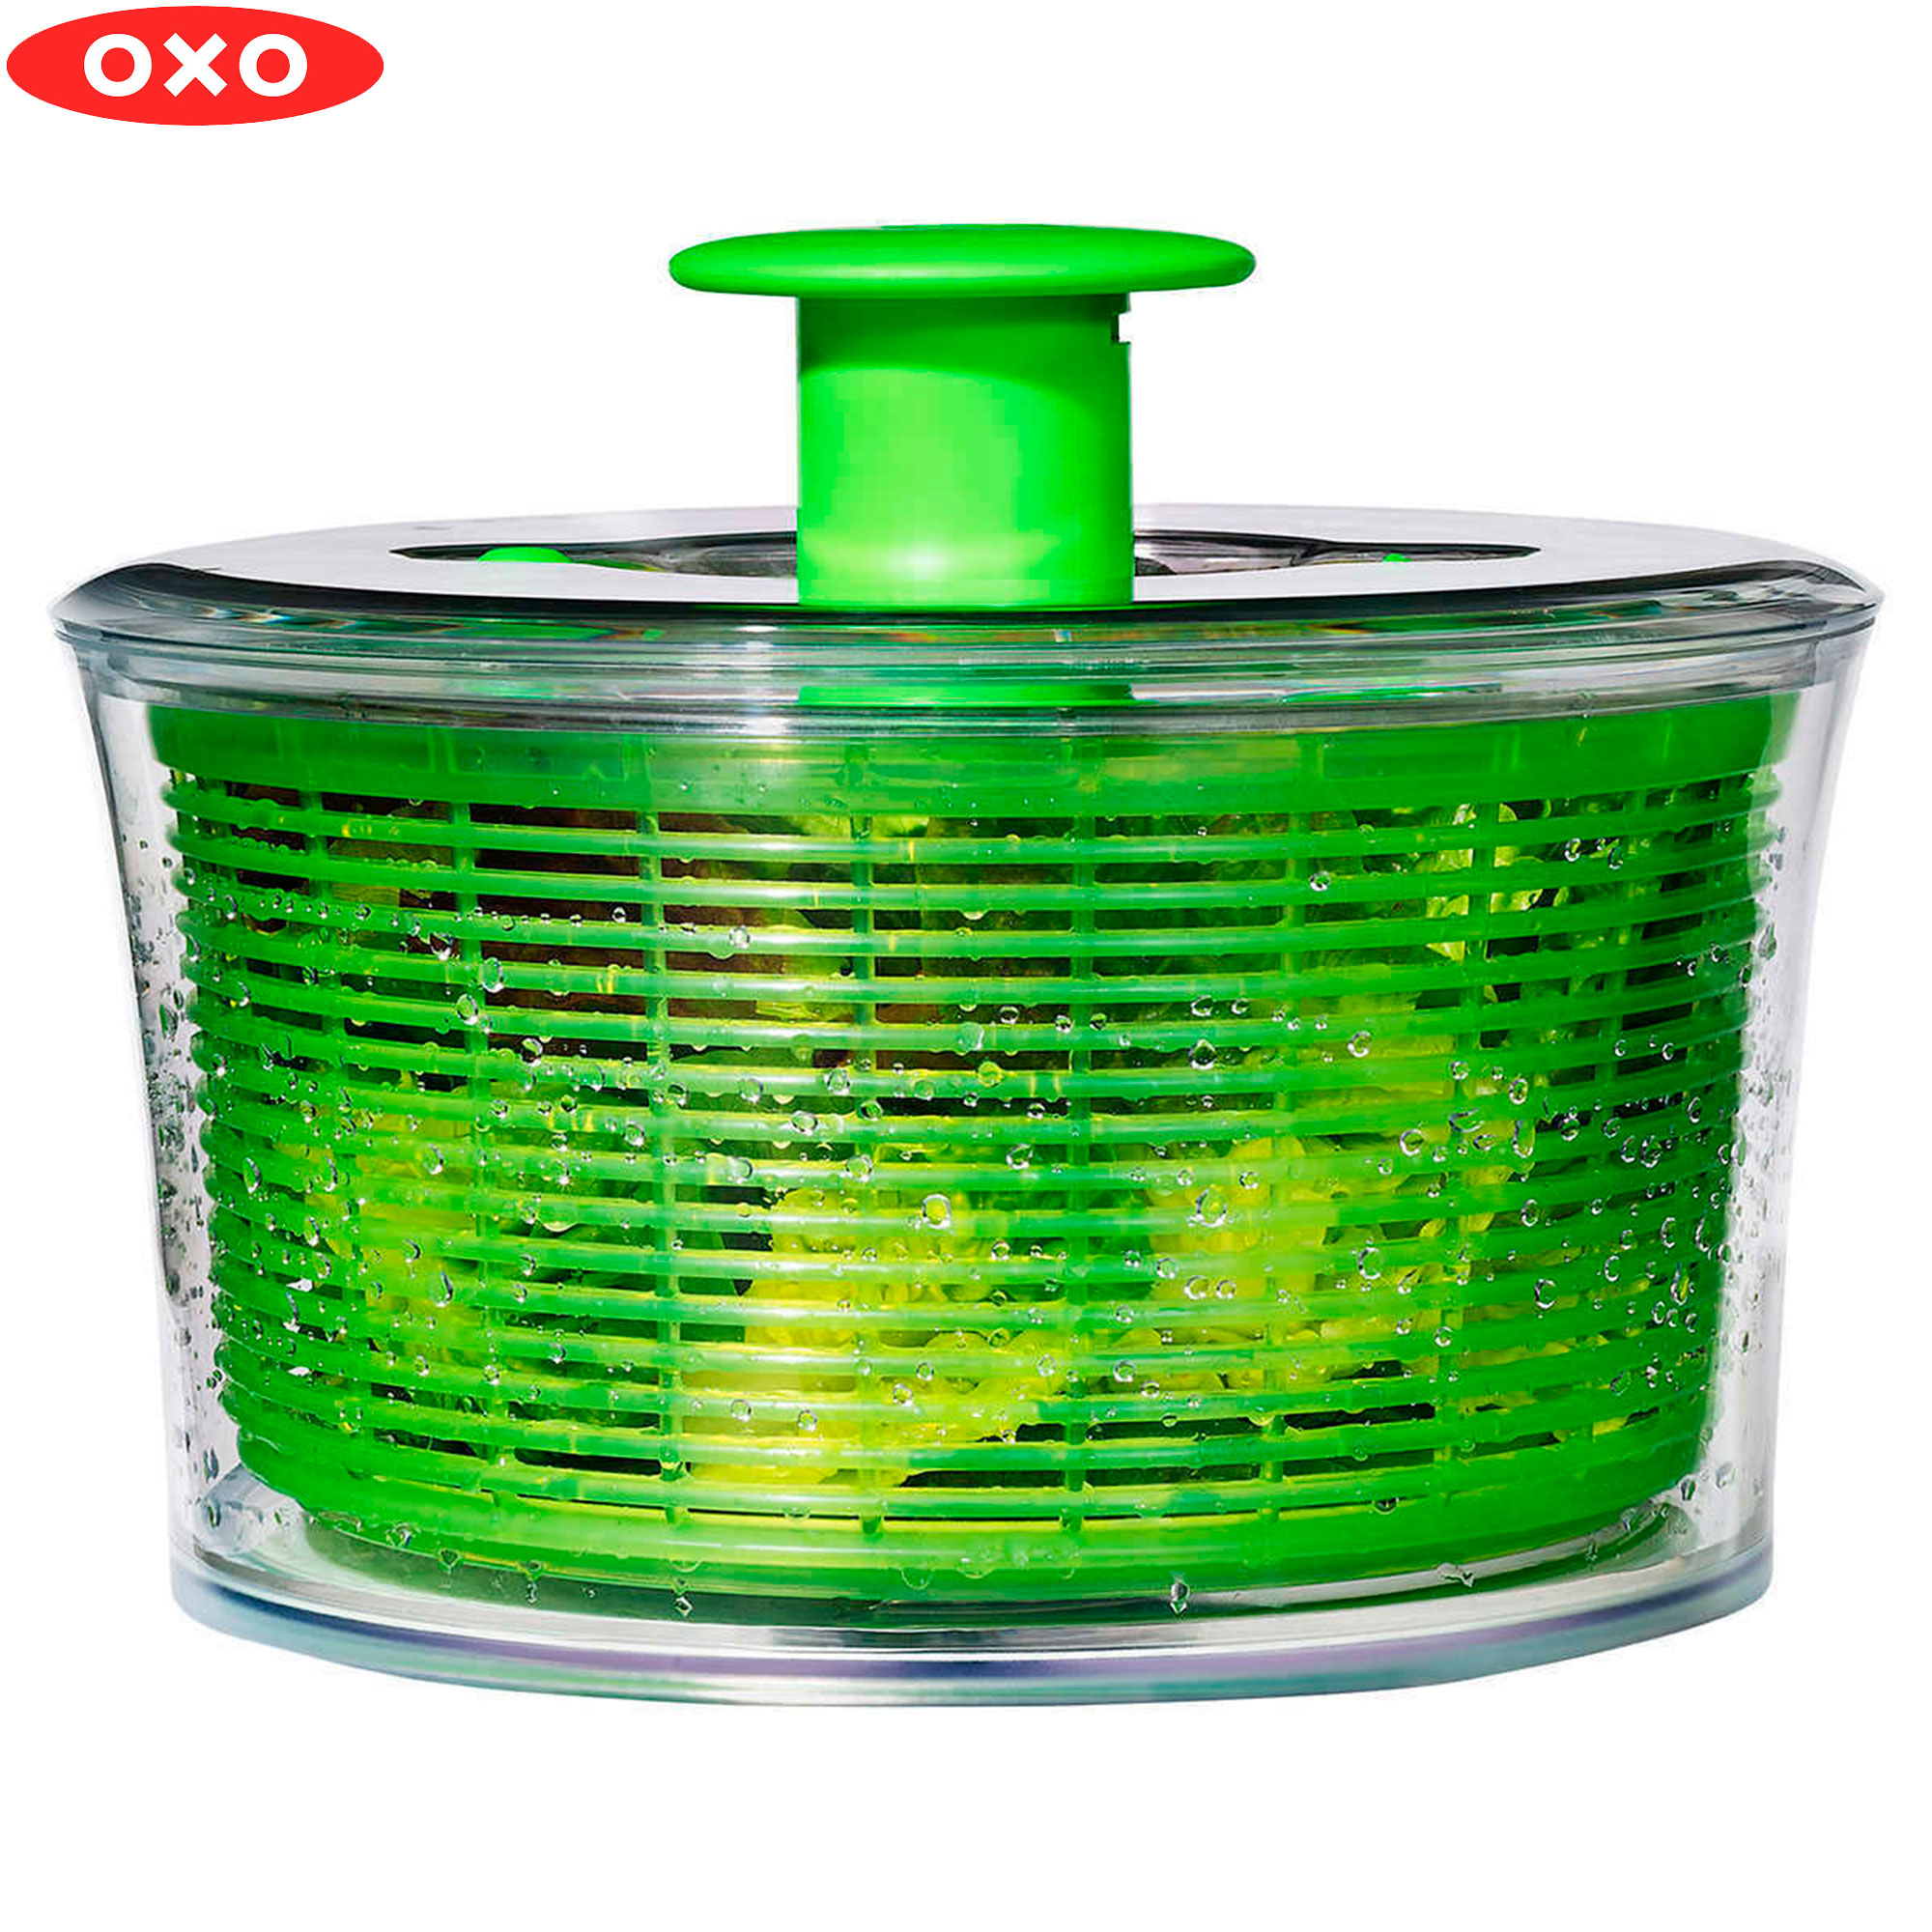 Desacuerdo Fanático botón Escurridor de ensalada OXO - Multimax Store